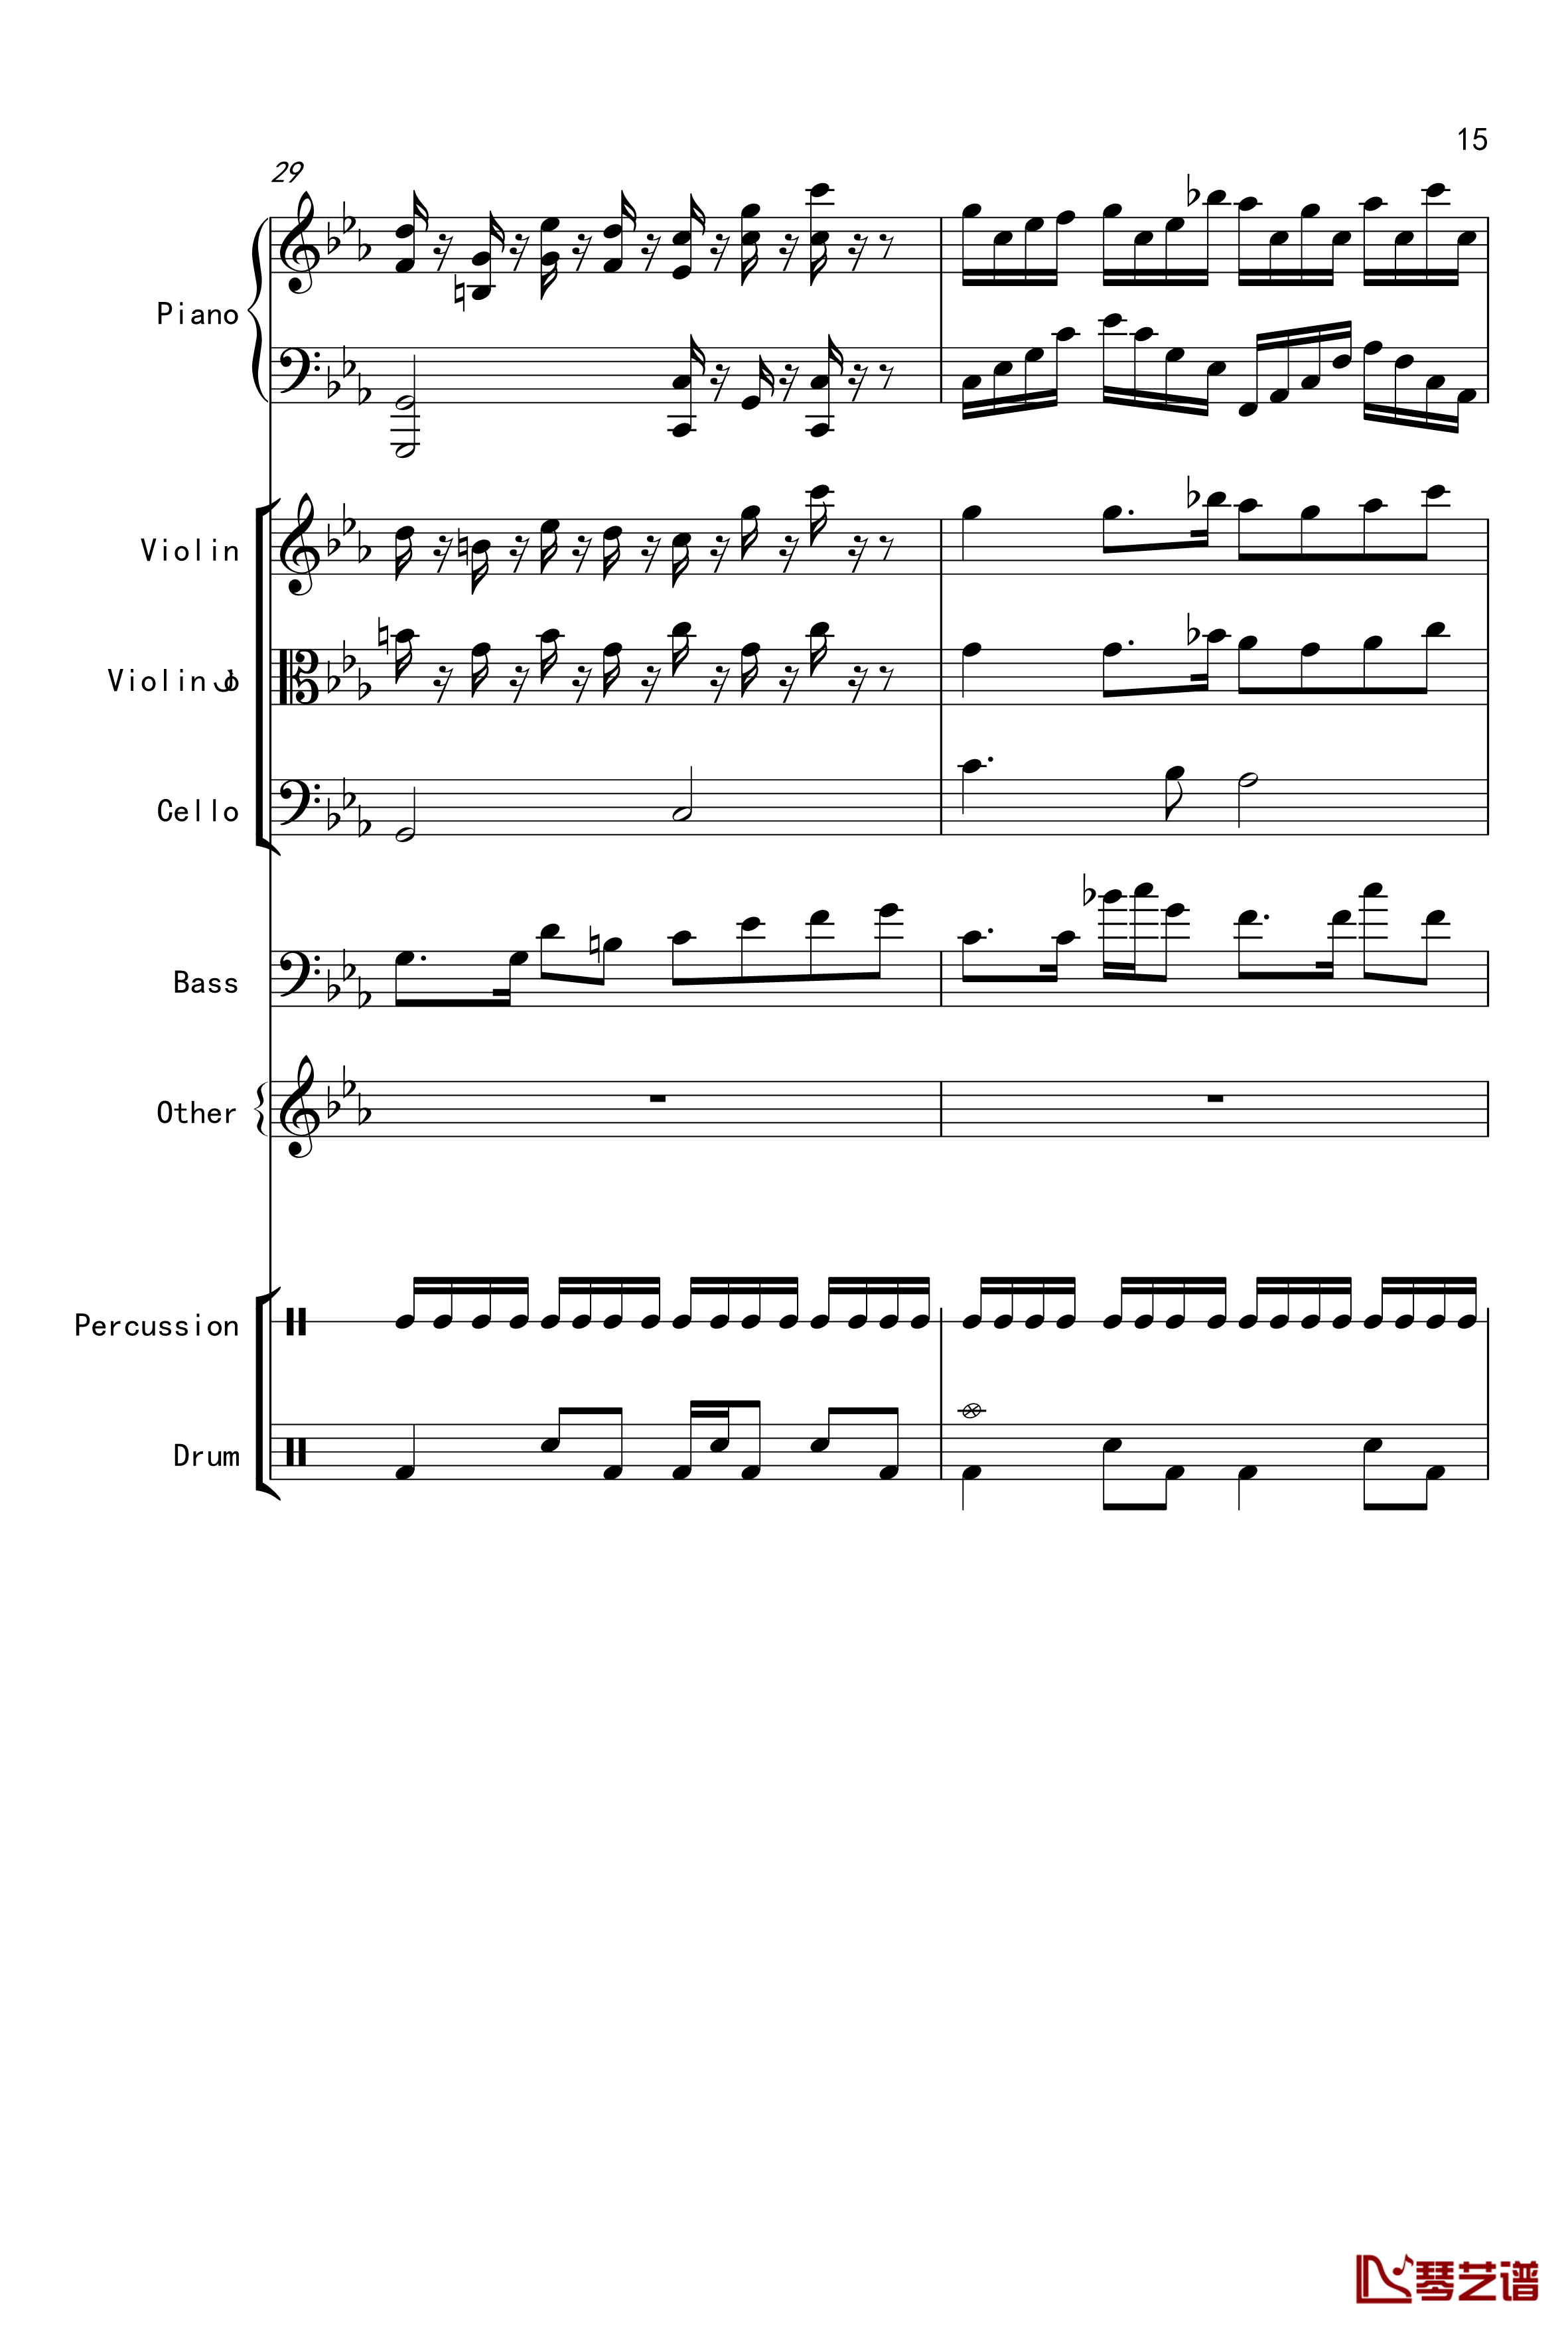 克罗地亚舞曲钢琴谱-Croatian Rhapsody-马克西姆-Maksim·Mrvica15